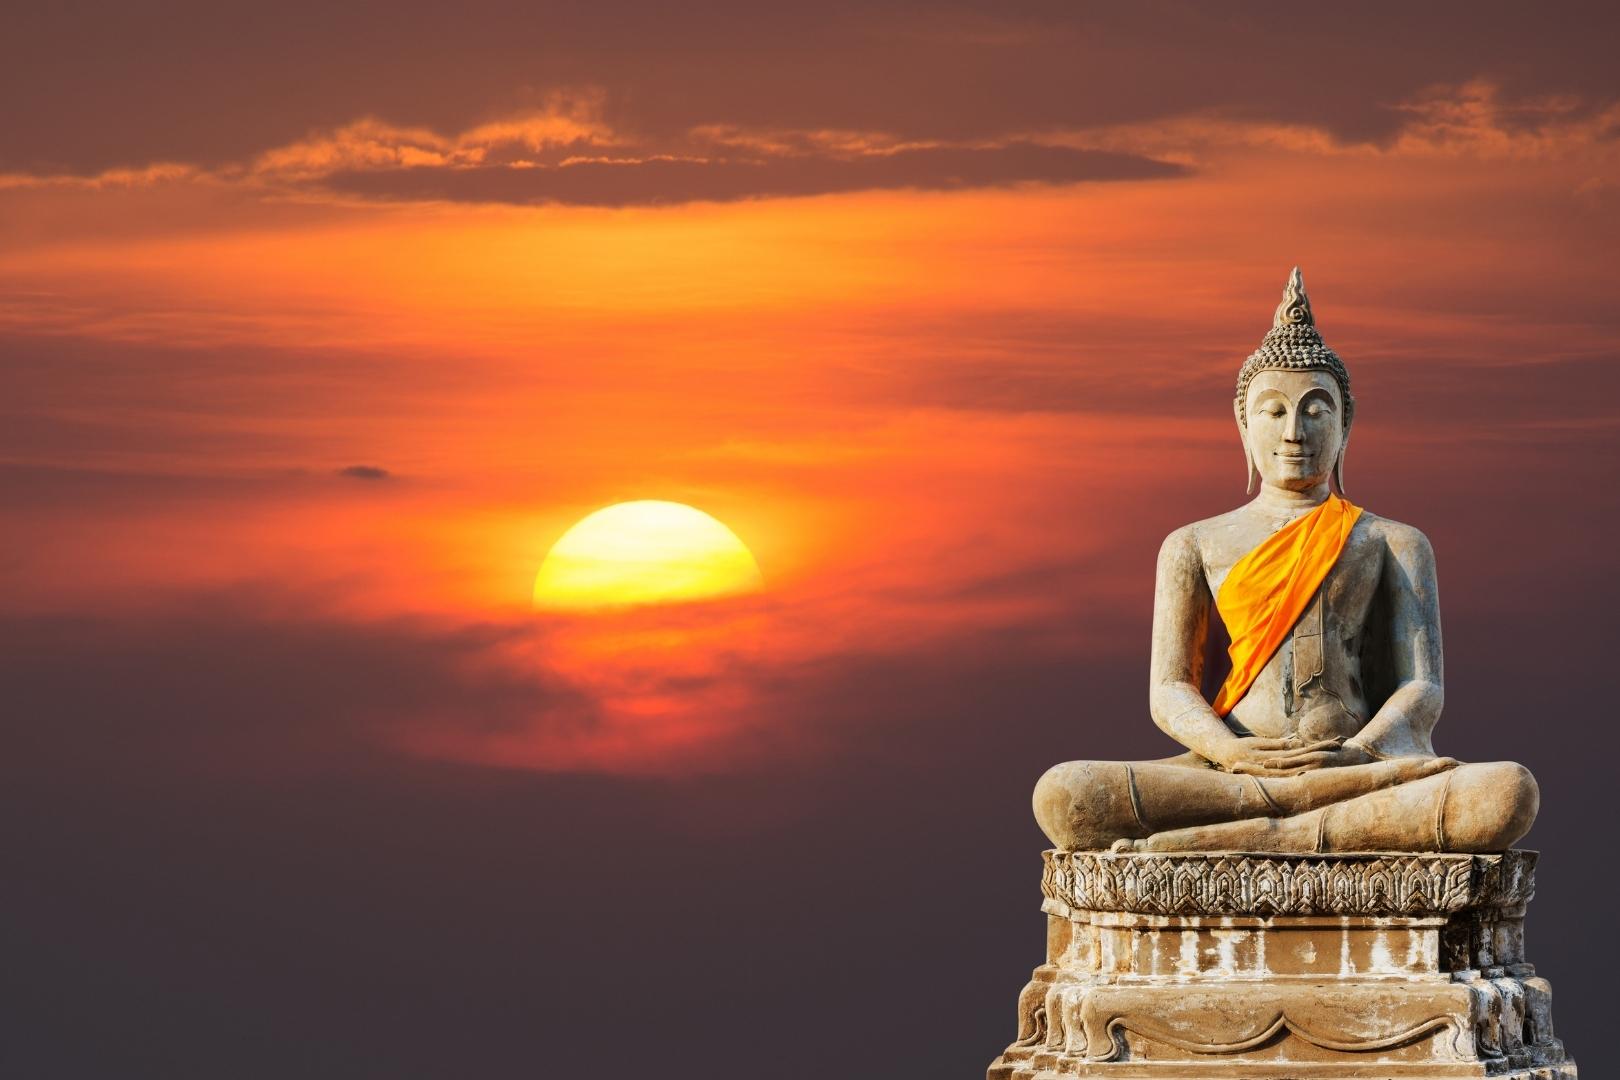 Đức Phật đã trở thành nguồn sáng soi rọi, giúp hàng triệu người trên thế giới tìm thấy lối đi trong bóng tối. Để hiểu hơn về những giáo lý quý báu này, hãy cùng nhau khám phá 10 bài học cuộc sống từ Đức Phật mà chúng ta nên biết và áp dụng.